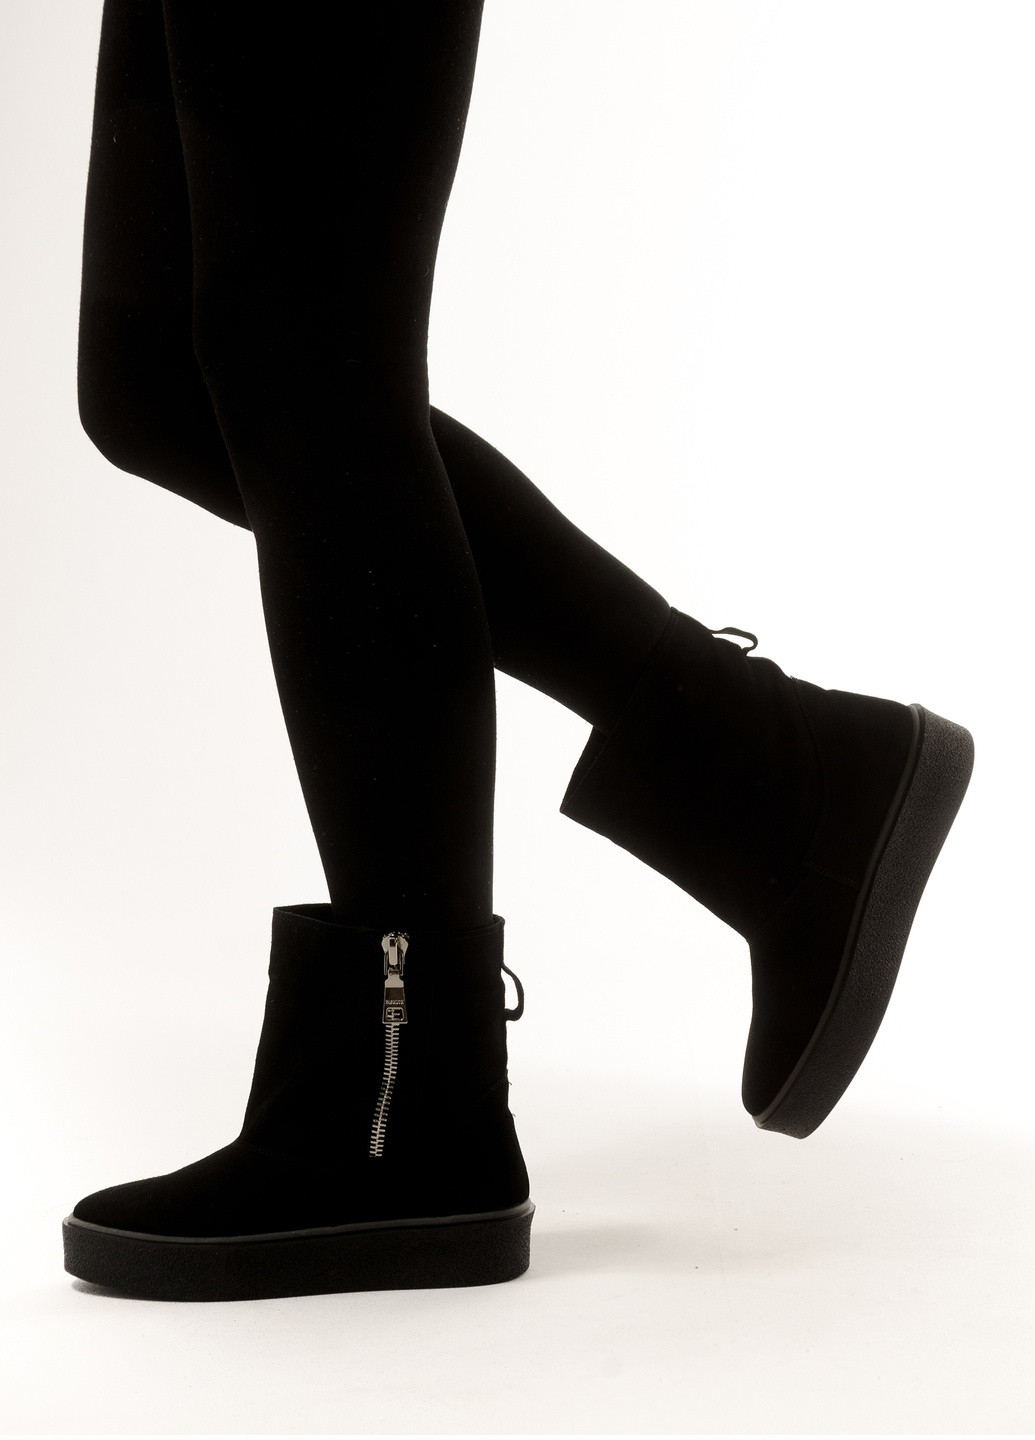 Зимние стильные ботиночки на меху ин натуральной замшевой кожи INNOE с молнией из натуральной замши